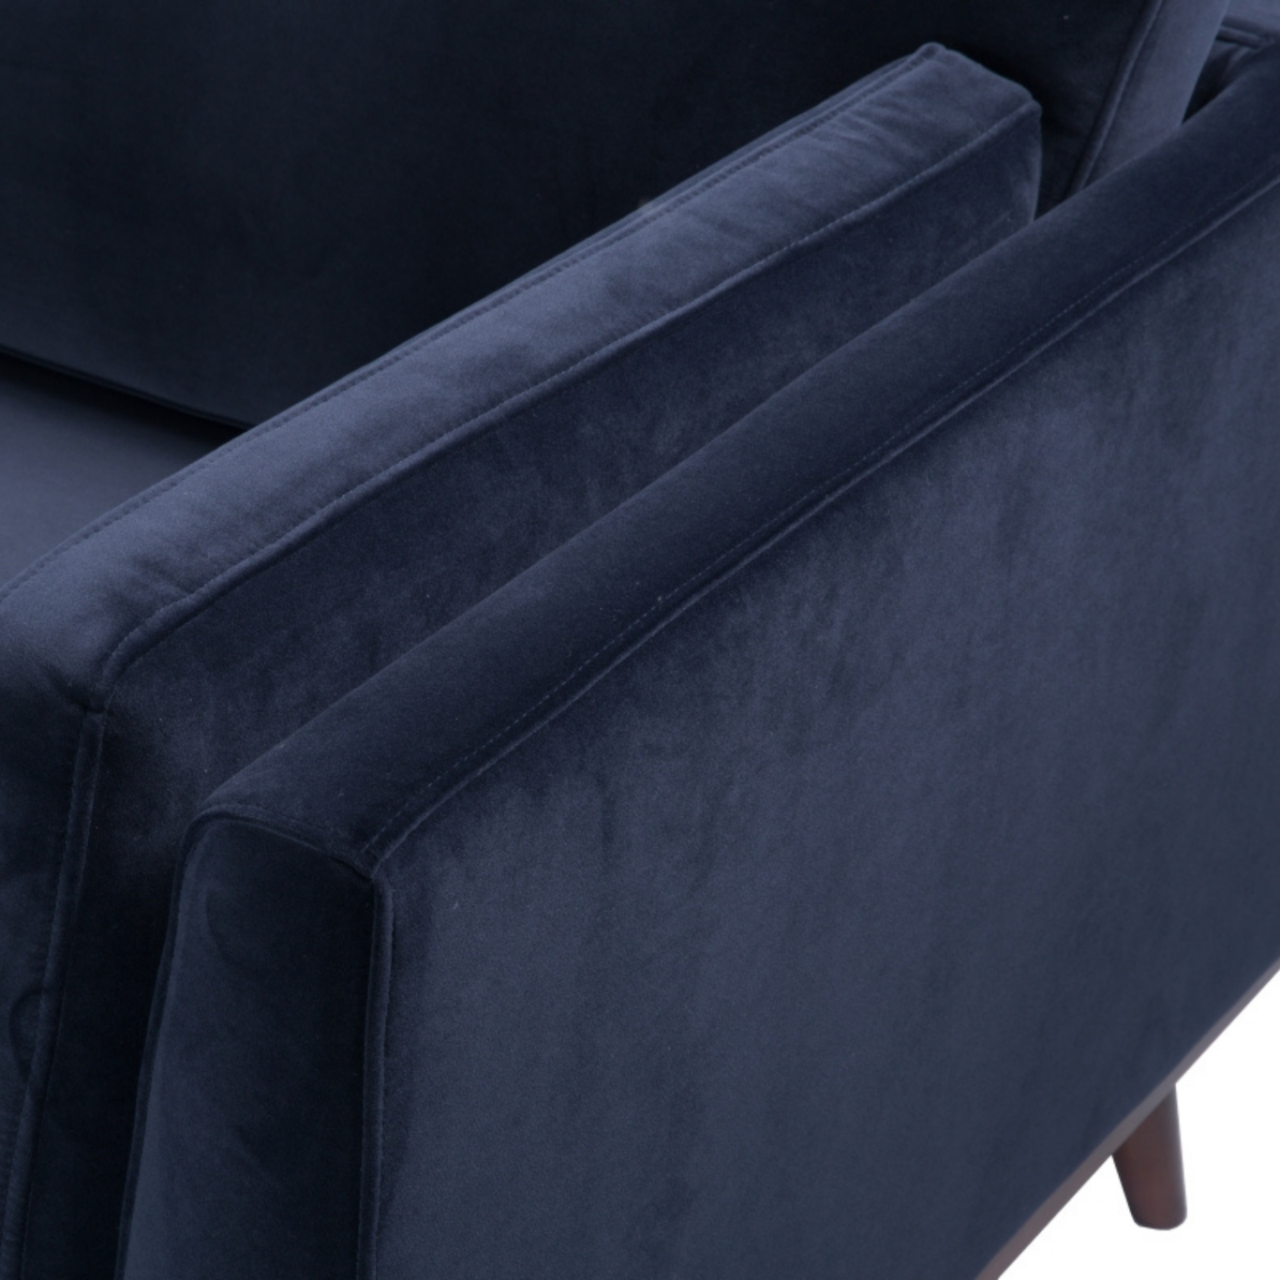 simple modern 3 seater sofa in midnight blue velvet